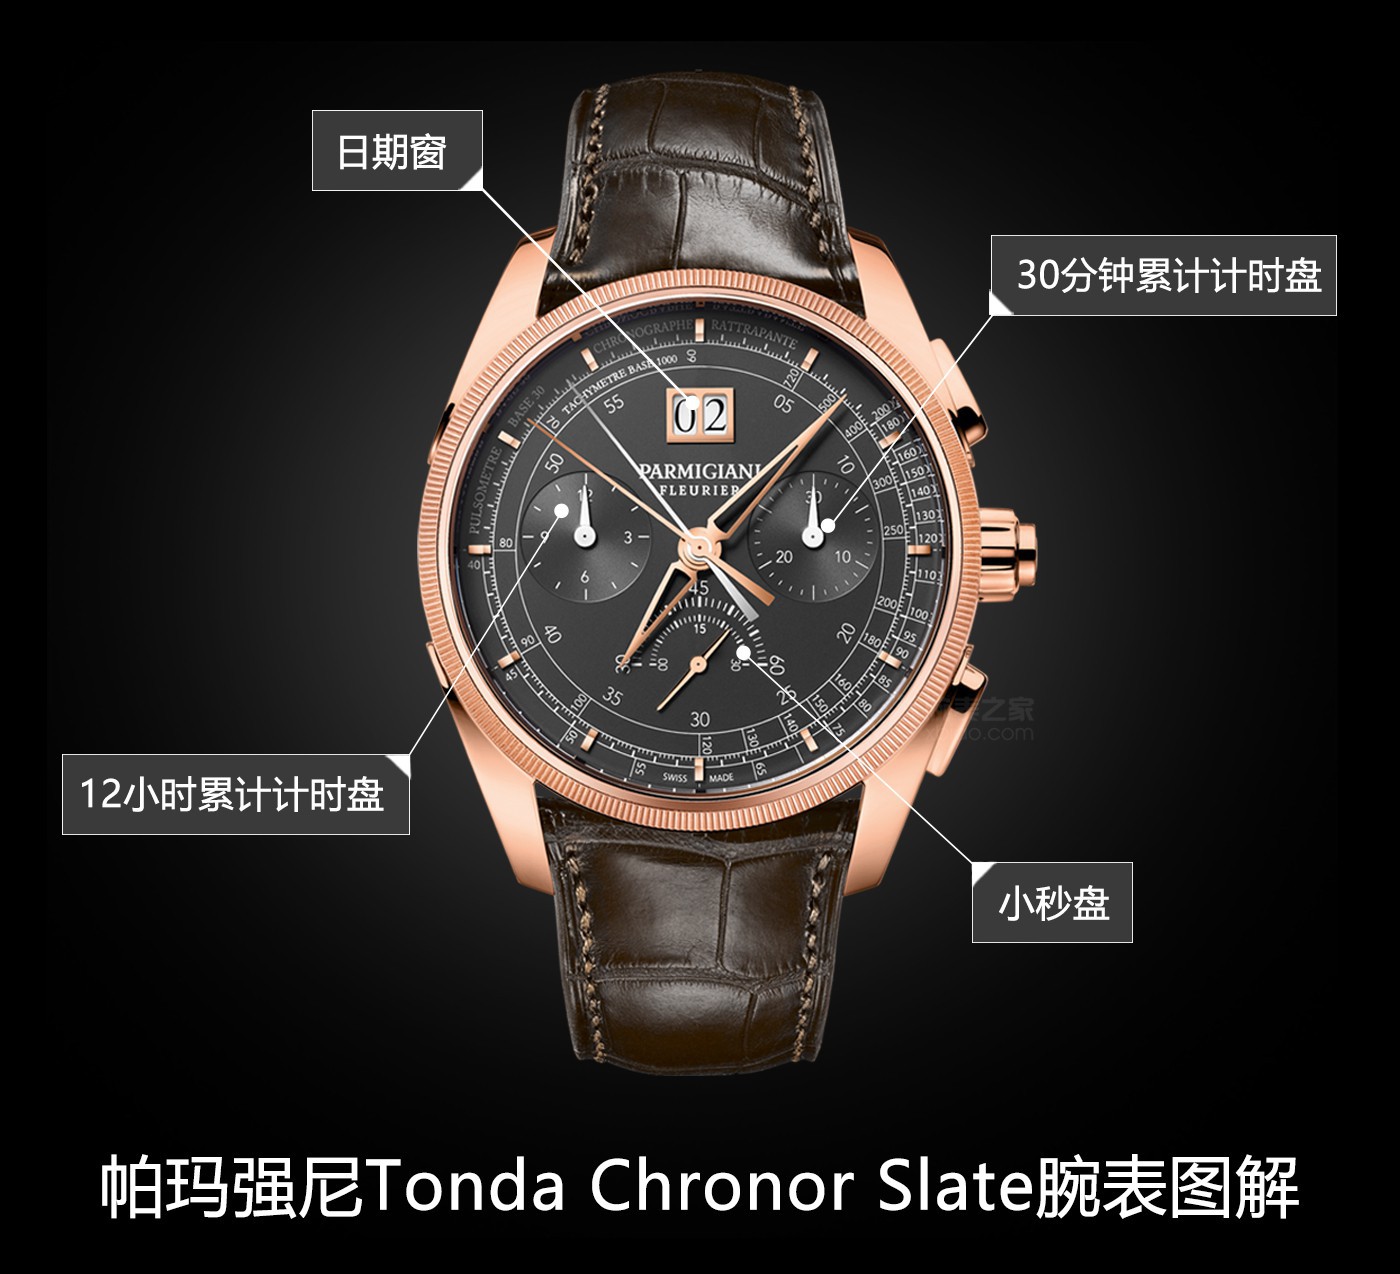 全在兹|当代有风度的高品质 品评帕玛强尼Tonda Chronor Slate腕表